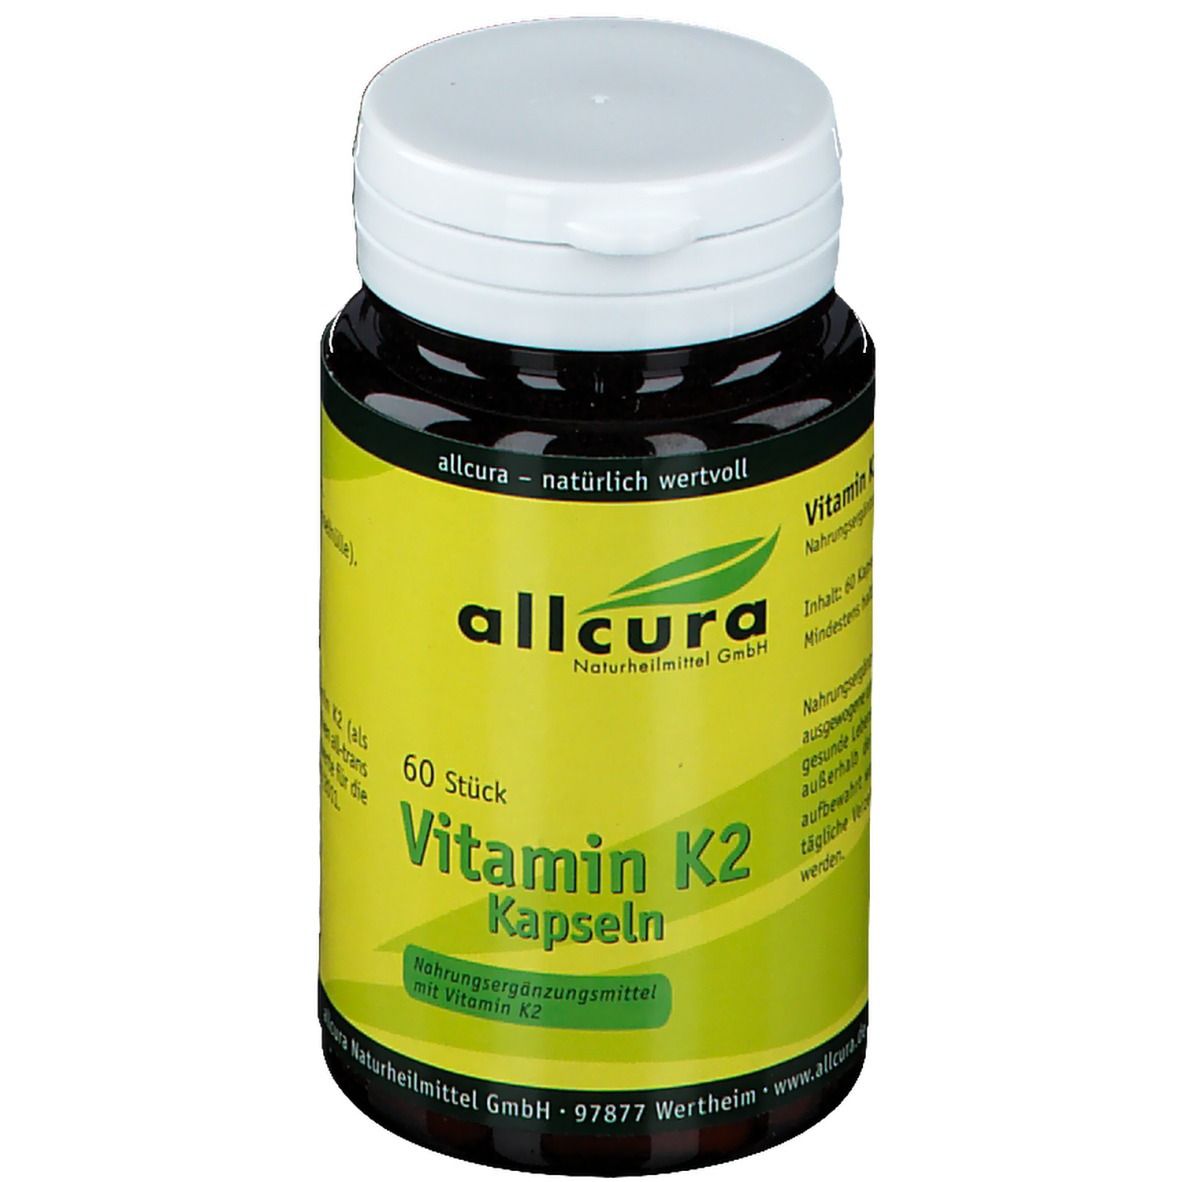 allcura Vitamin K2